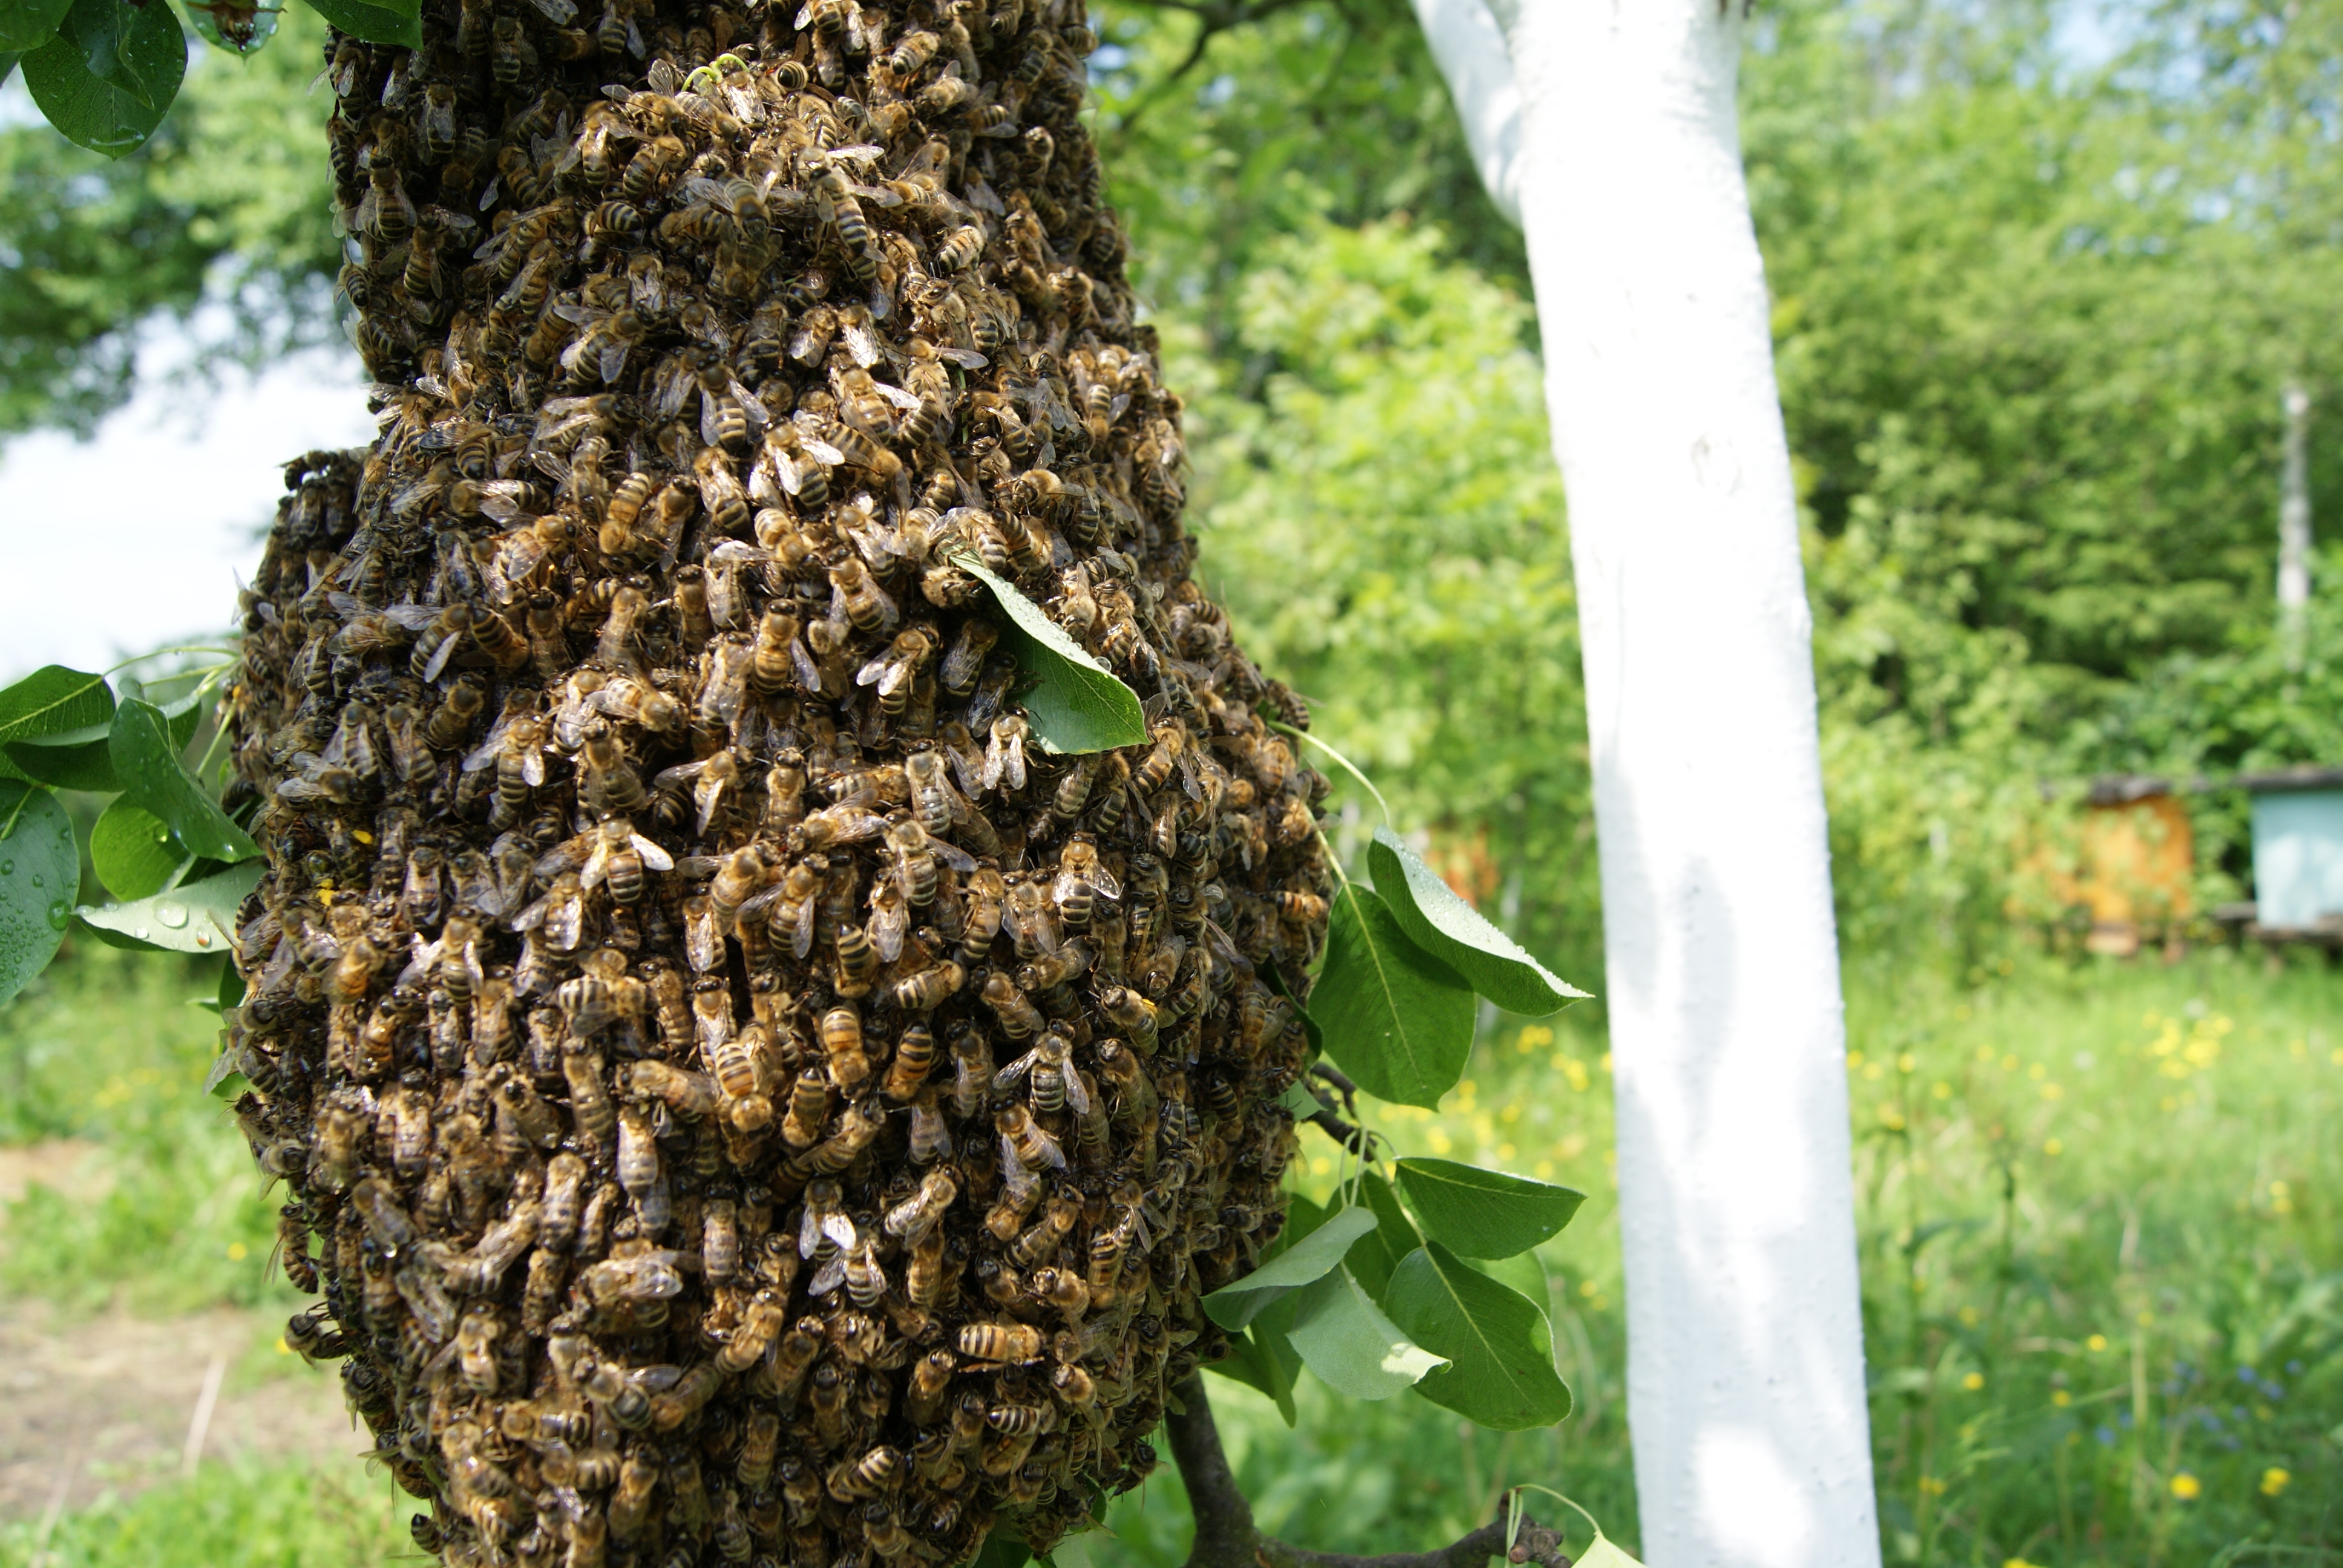 pszczoly na drzewie ukraina pasieka oleksandra